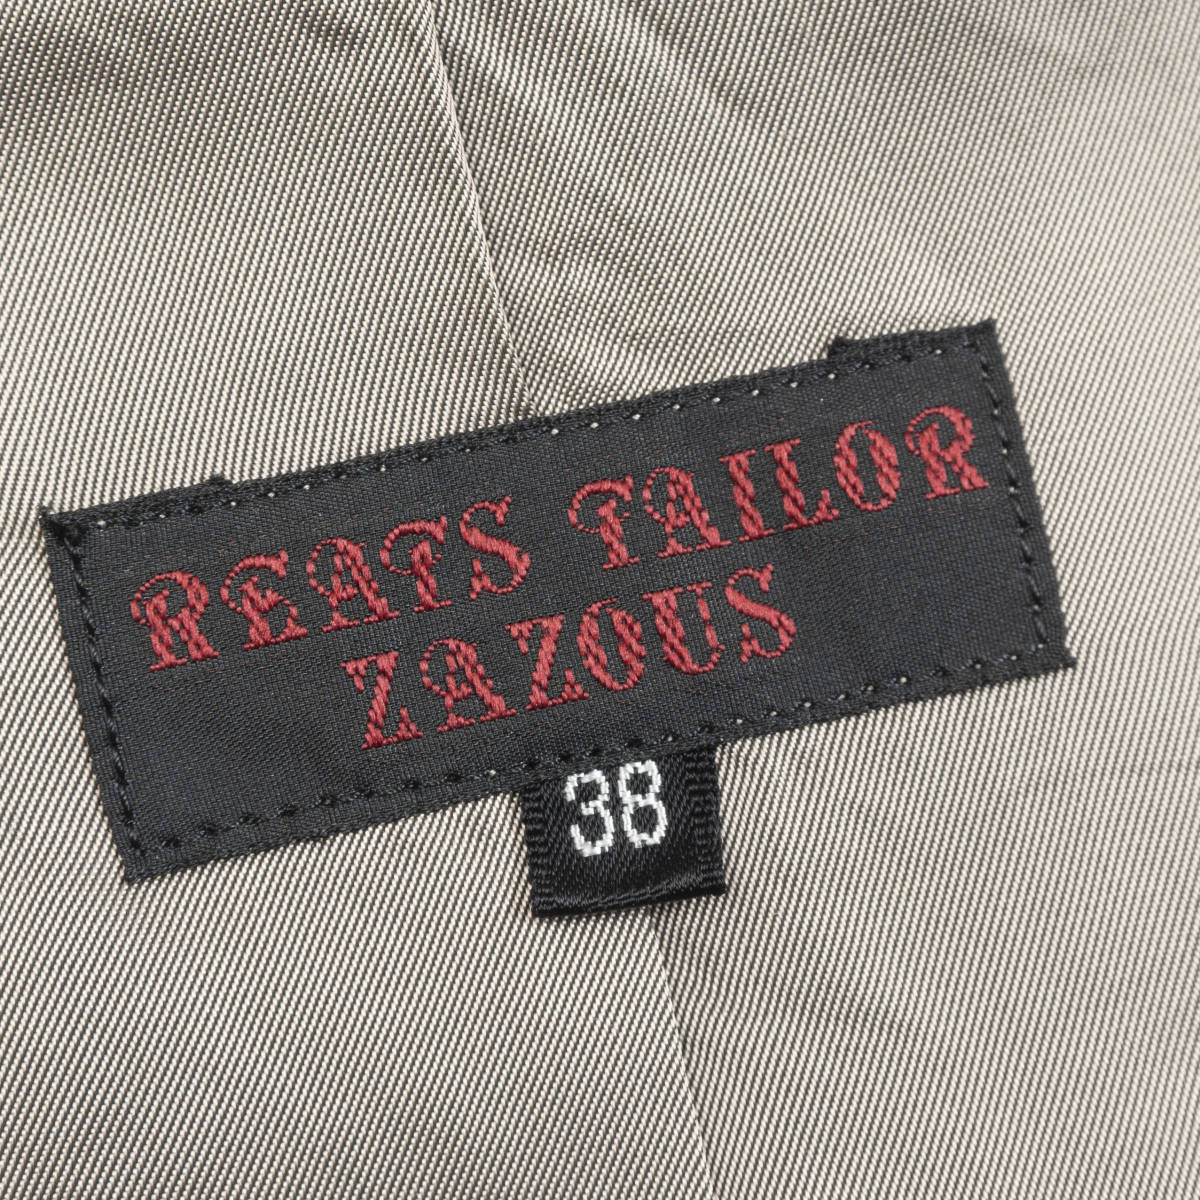 REATS TAILOR ZAZOUS トレンチコート 38(M相当) オリーブ ステンカラー 日本製 リーツテイラーザズー メンズ 管理2110205_画像6